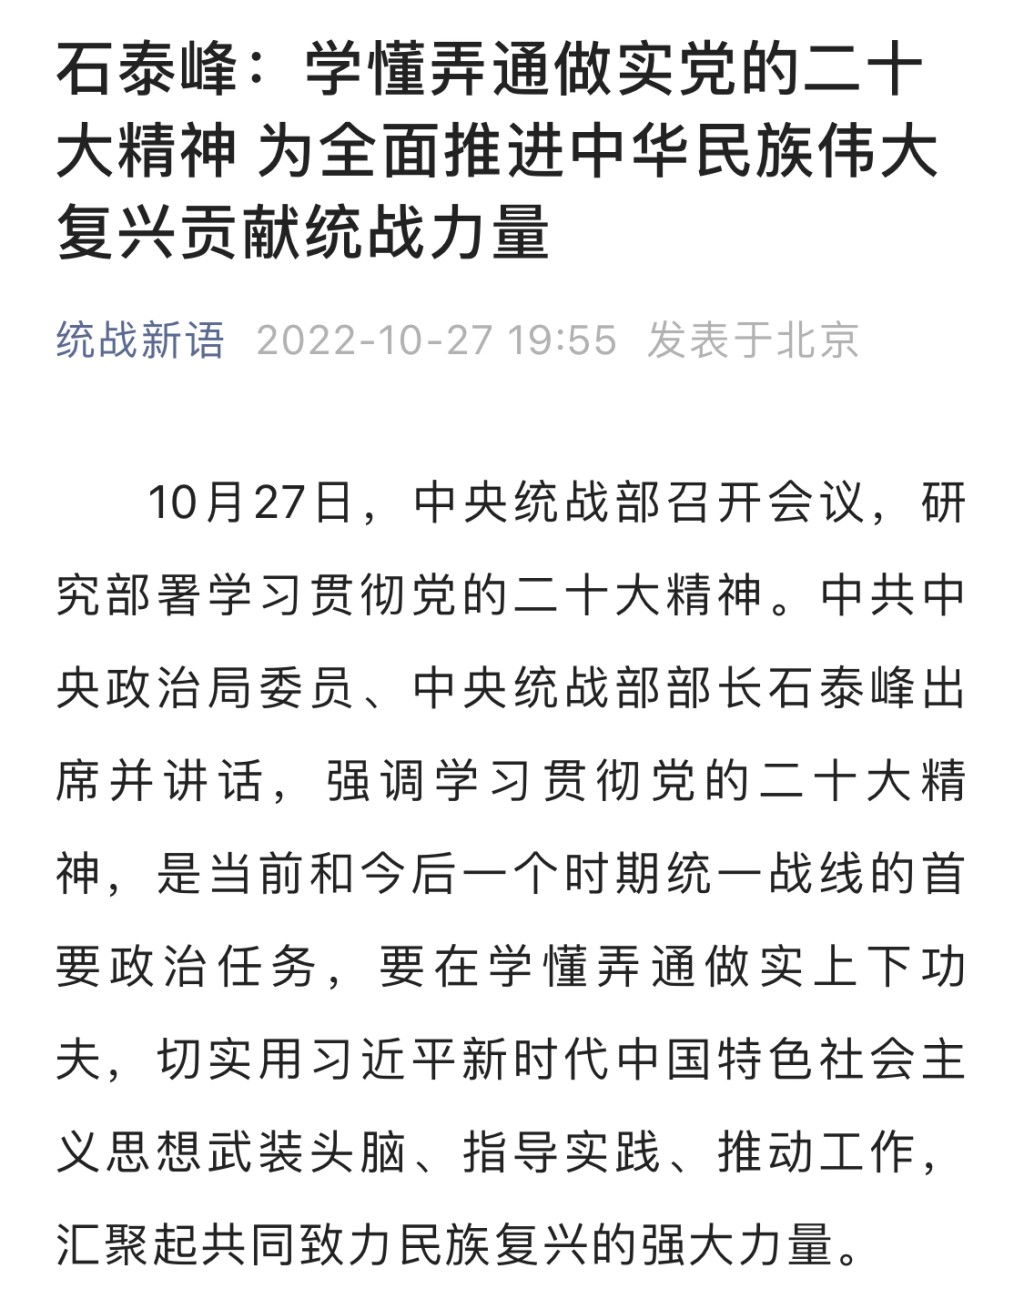 中央统战部官方微信公众号称，石泰峰今天以中央统战部部长身分公开亮相。互联网